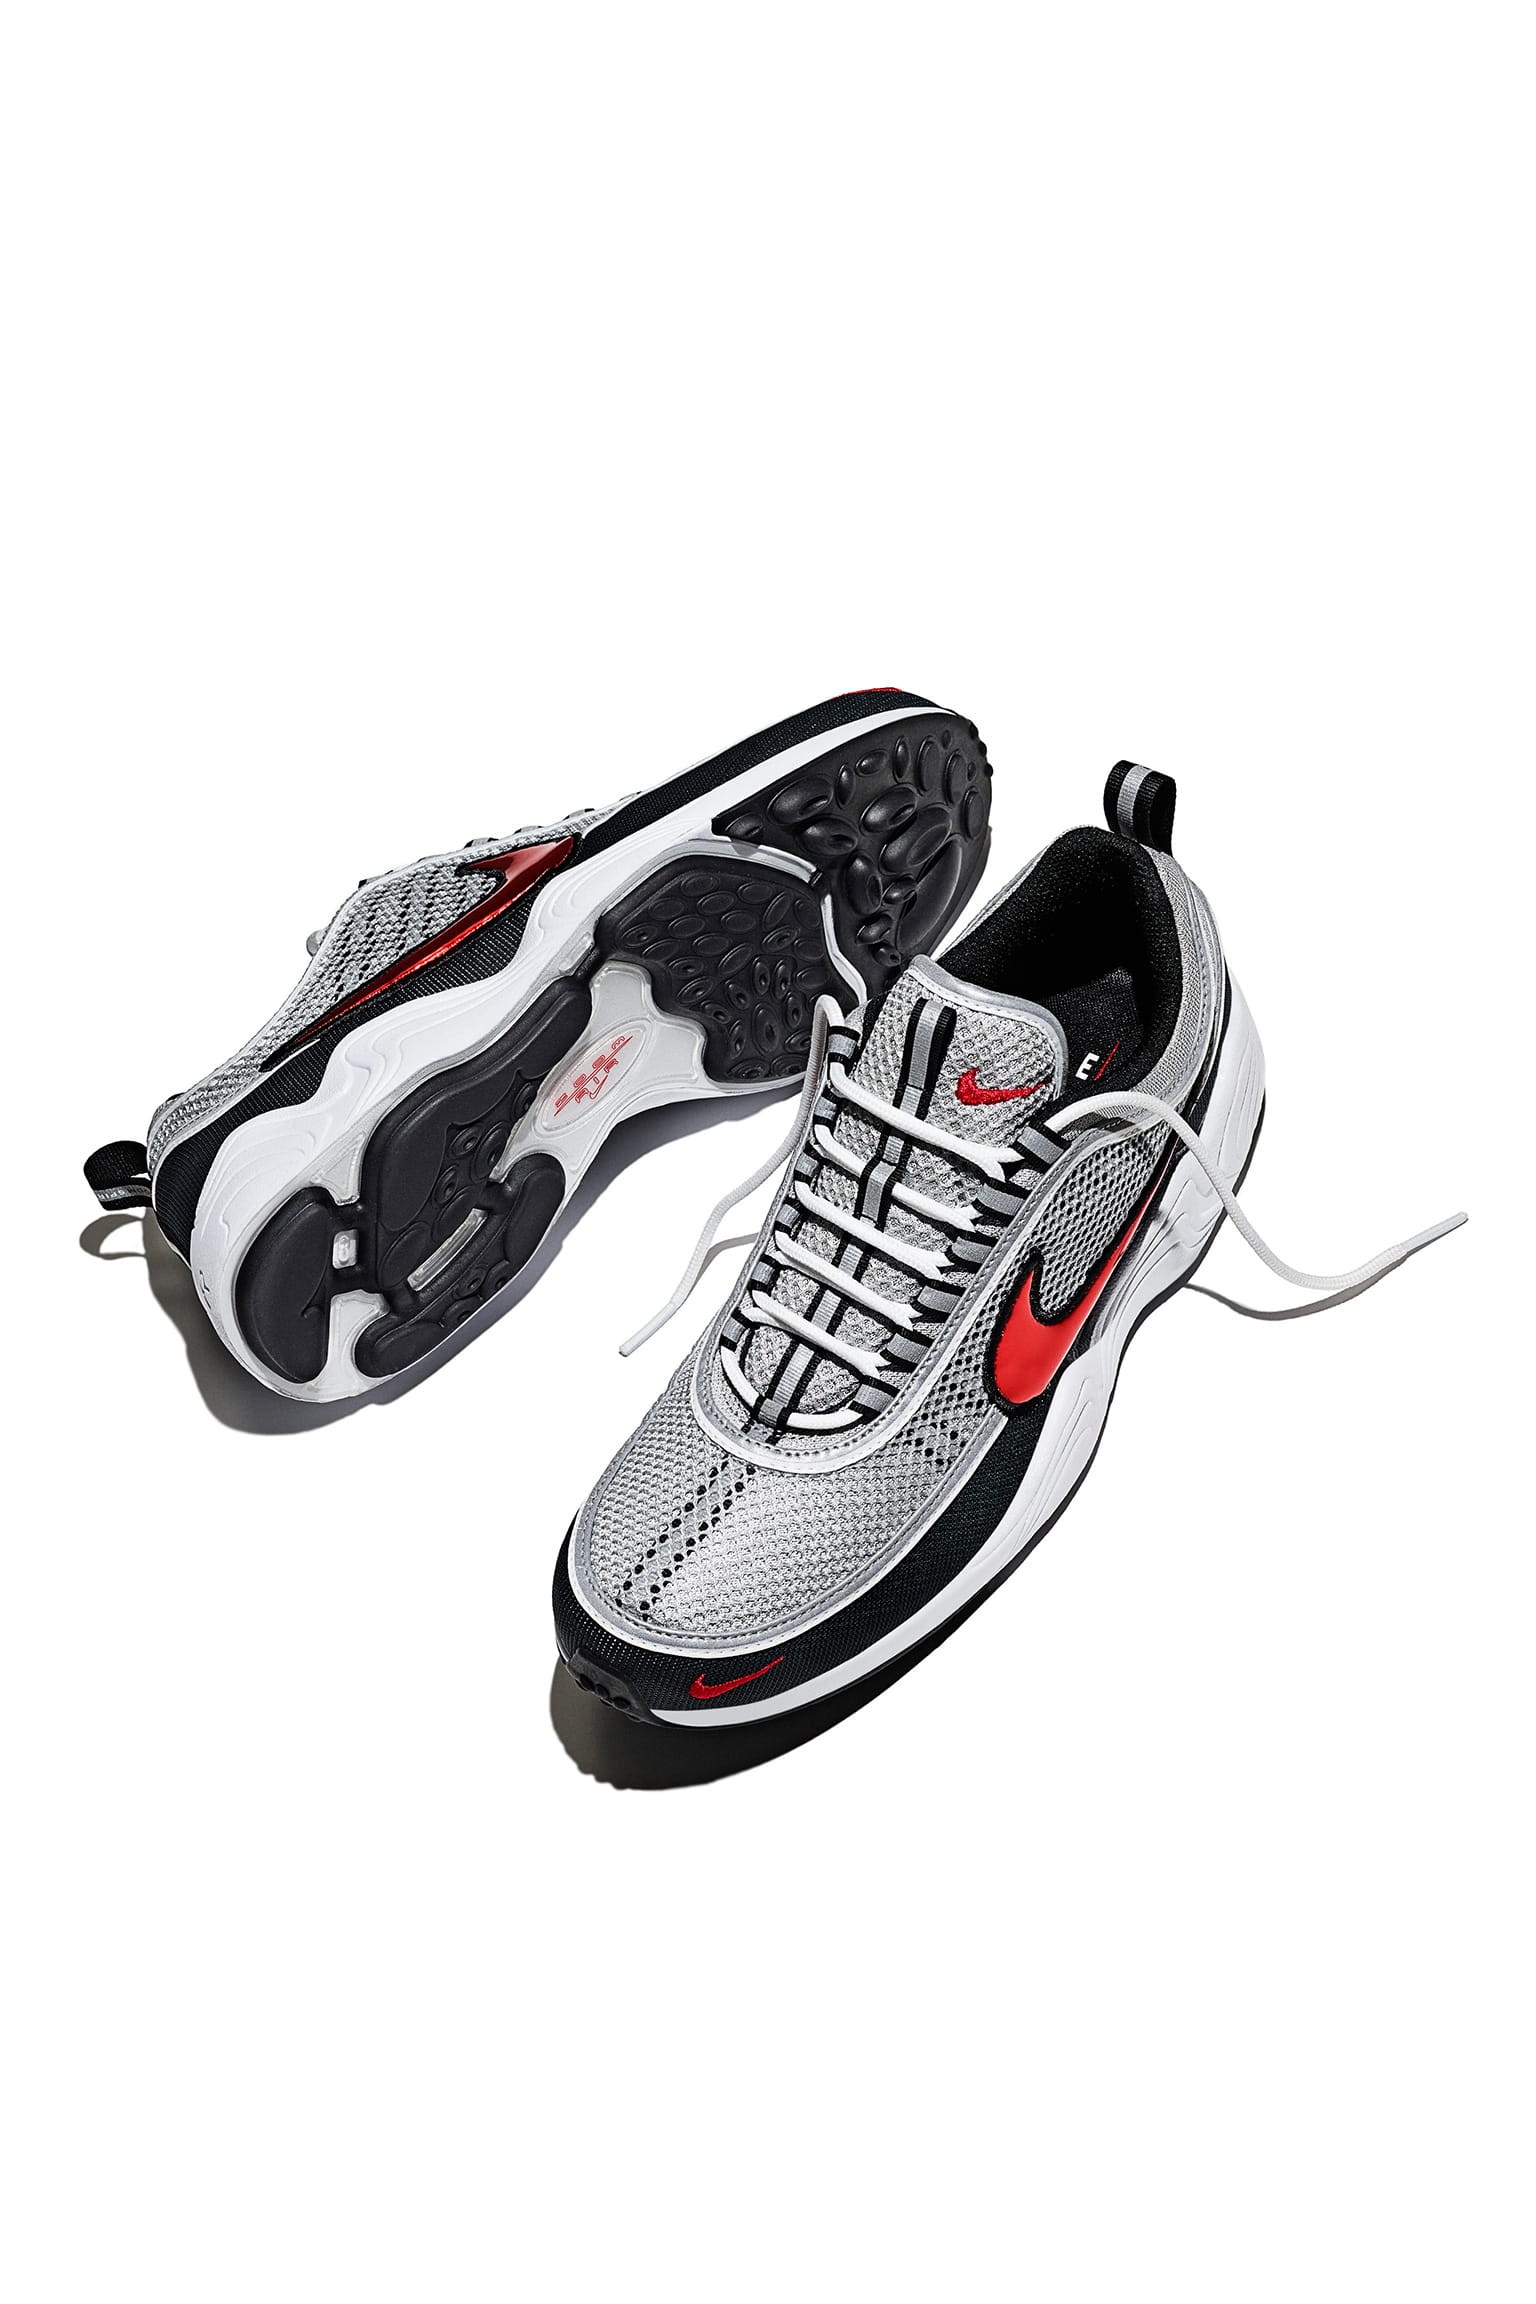 invención adolescentes Terminal Nike Air Zoom Spiridon 'Silver & Red' Release Date. Nike SNKRS